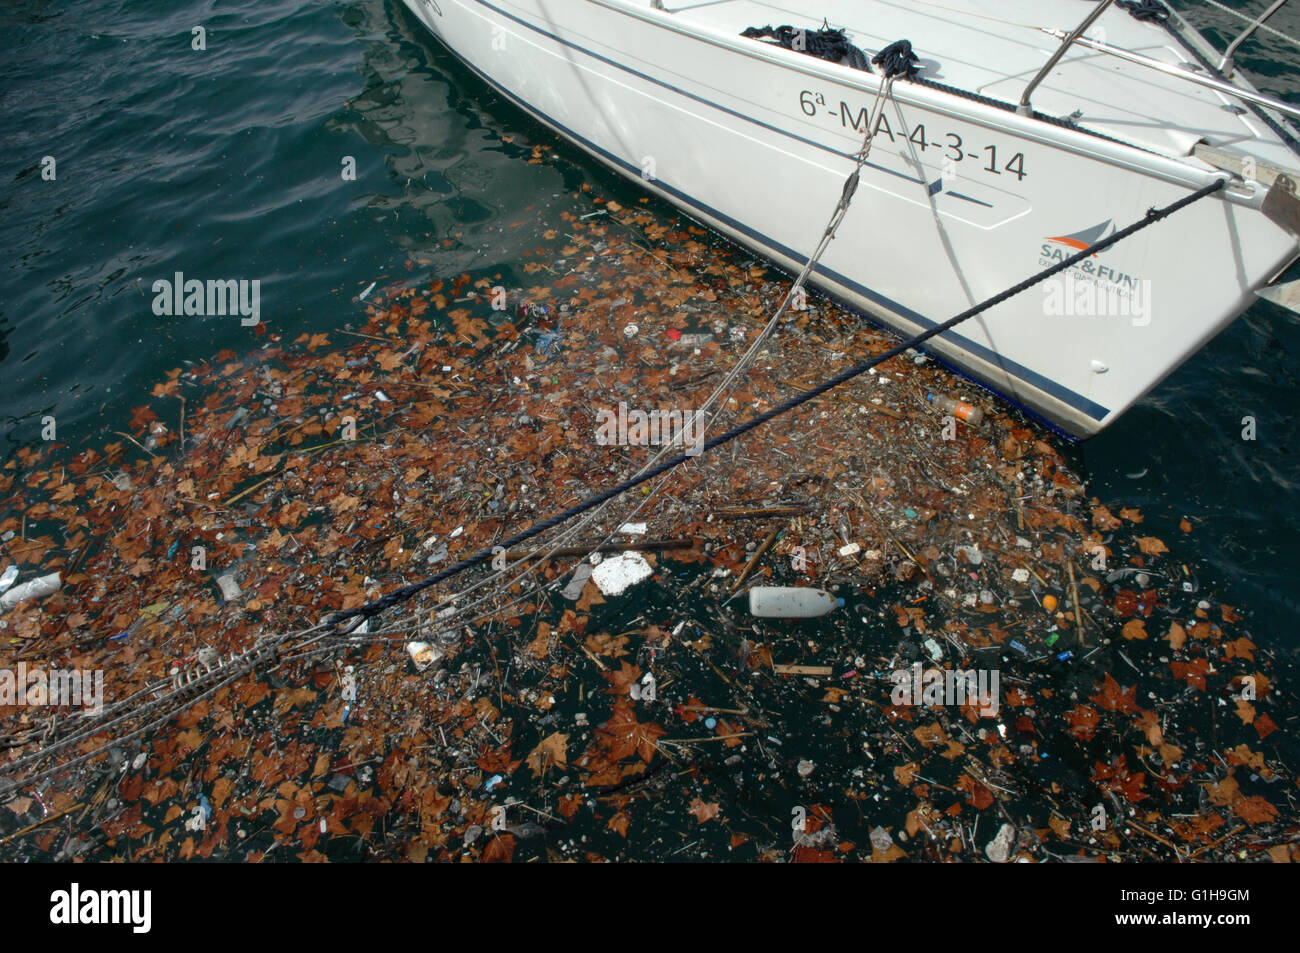 dead leaves,rubbish, seashore, Malaga Stock Photo